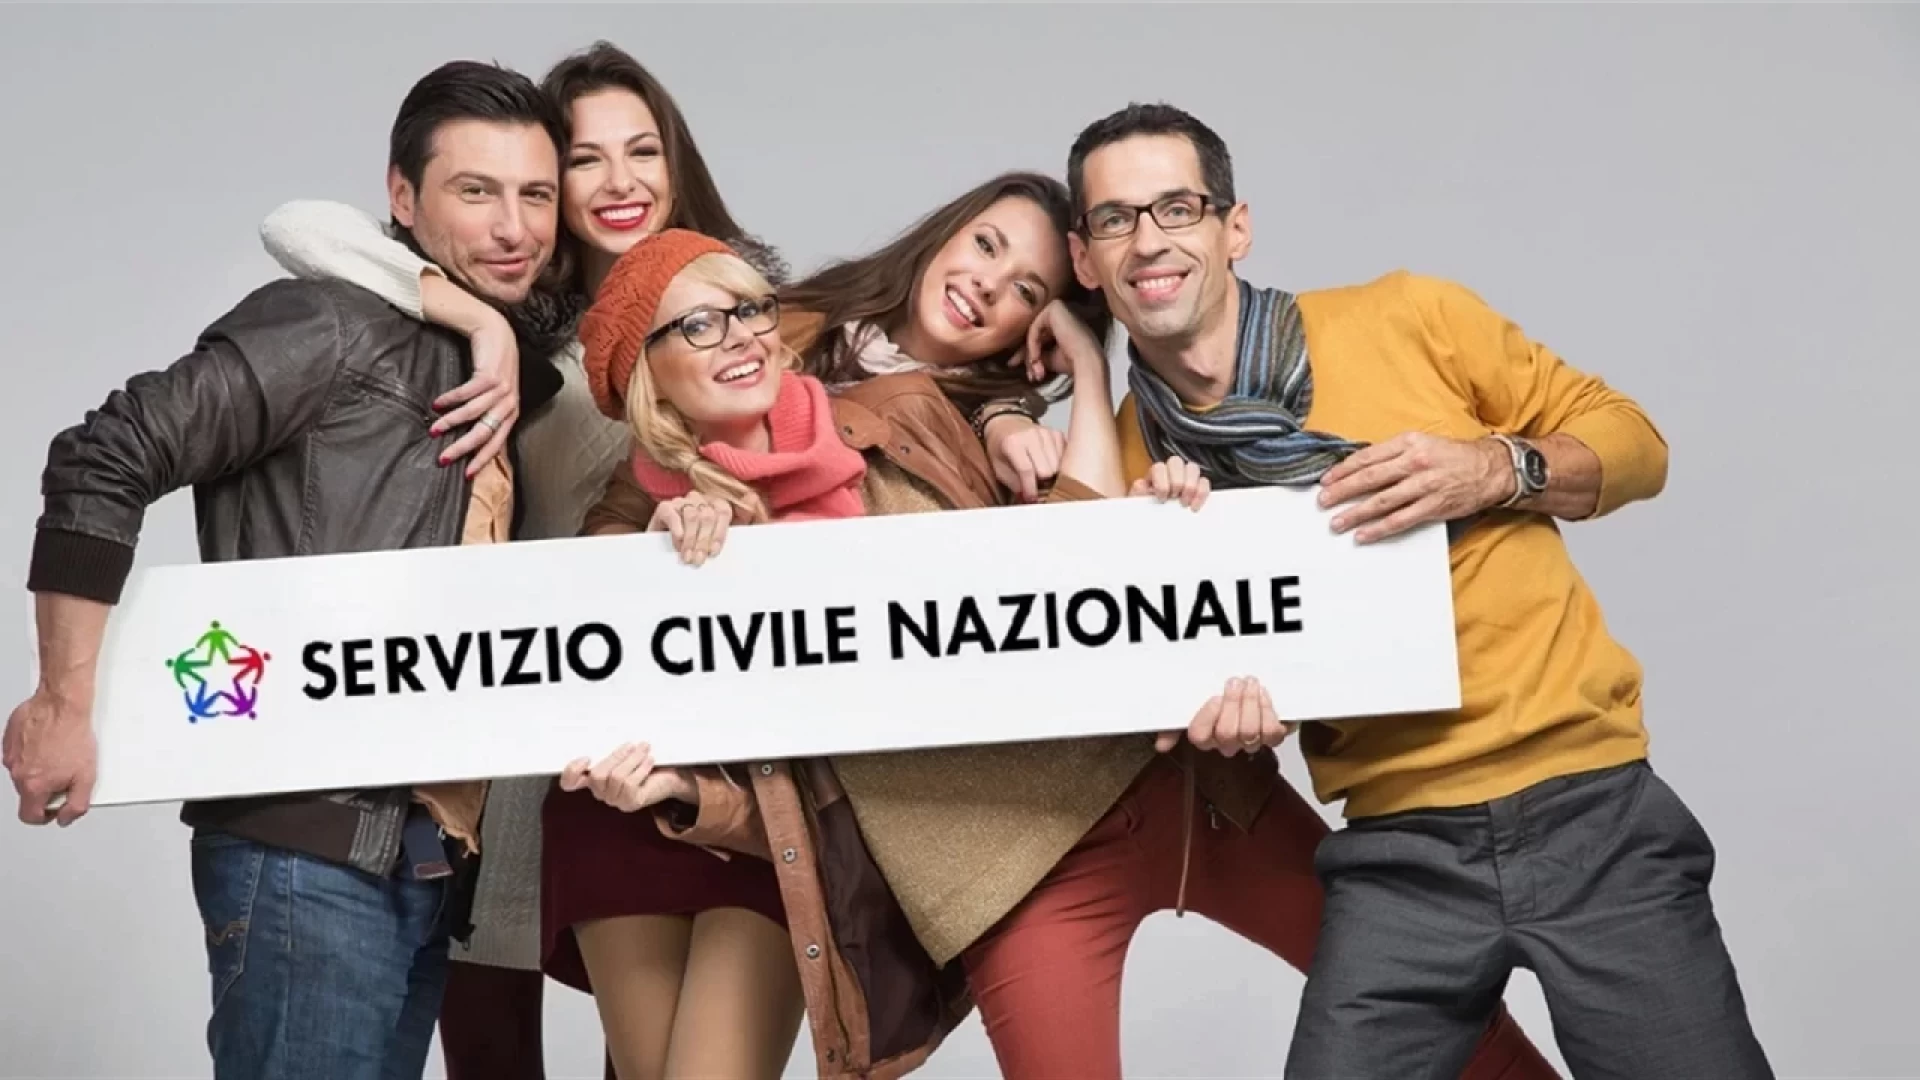 Servizio civile, pubblicato il bando nazionale per svolgerlo in UICI. Oltre 50mila i posti in tutta Italia.